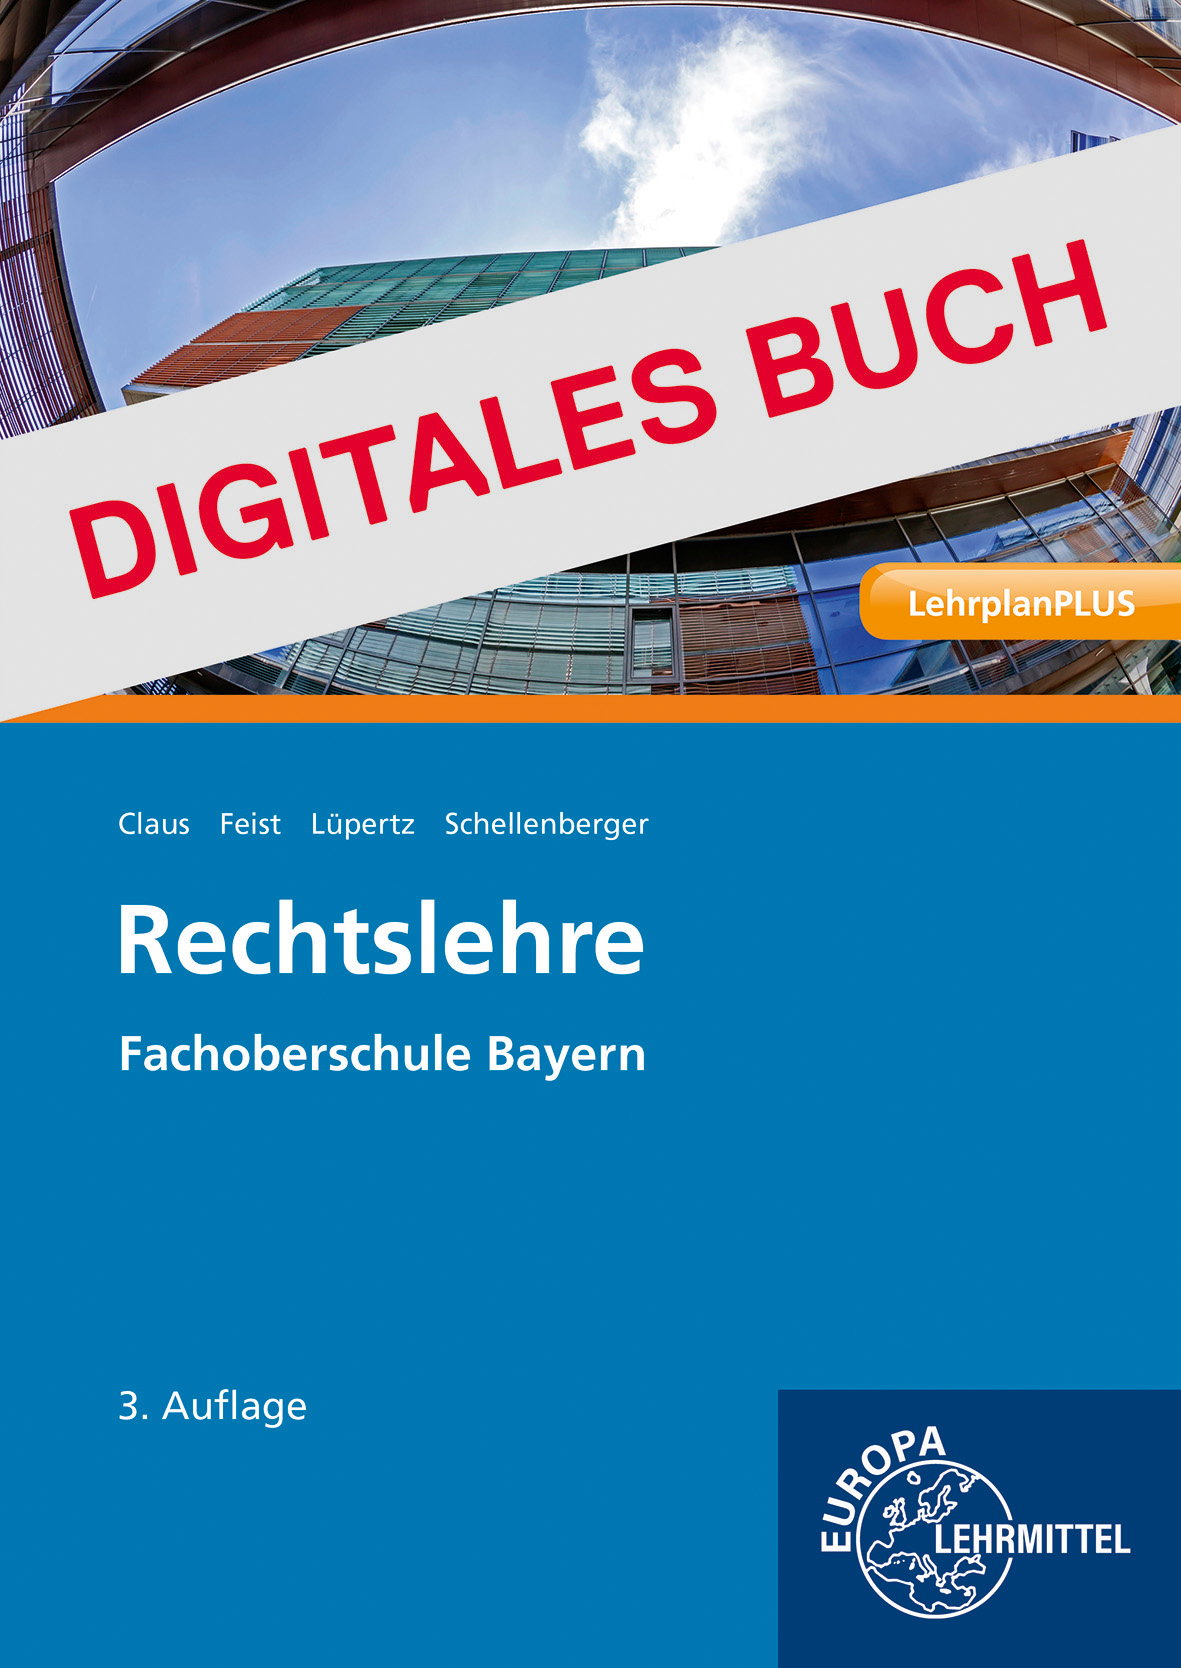 Rechtslehre FOS Bayern - Digitales Buch